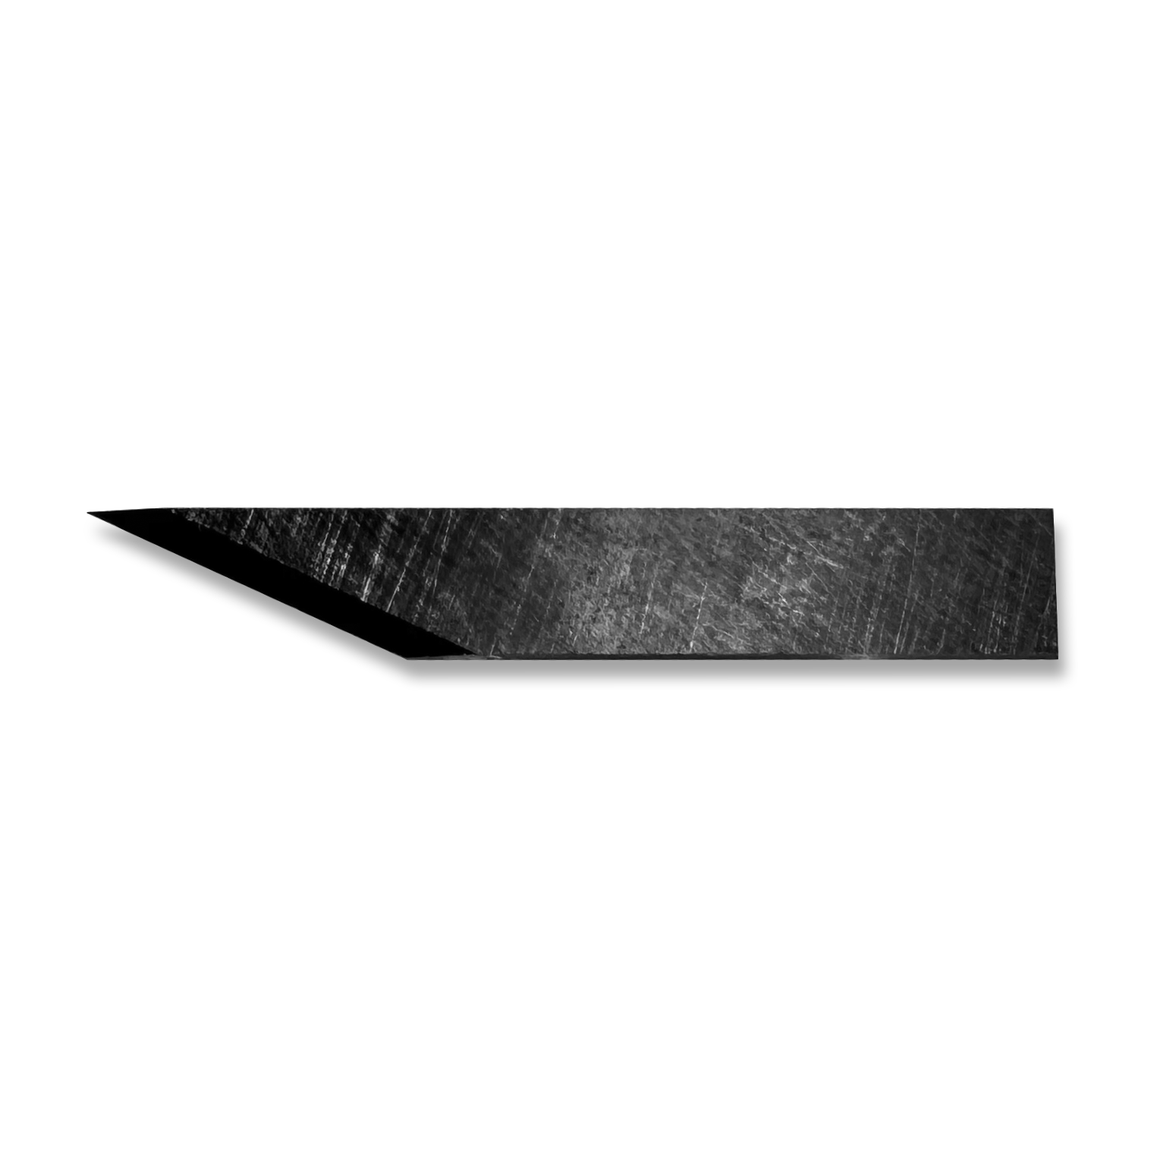 Summa 500-9801 single edge cut-out knife - 65°